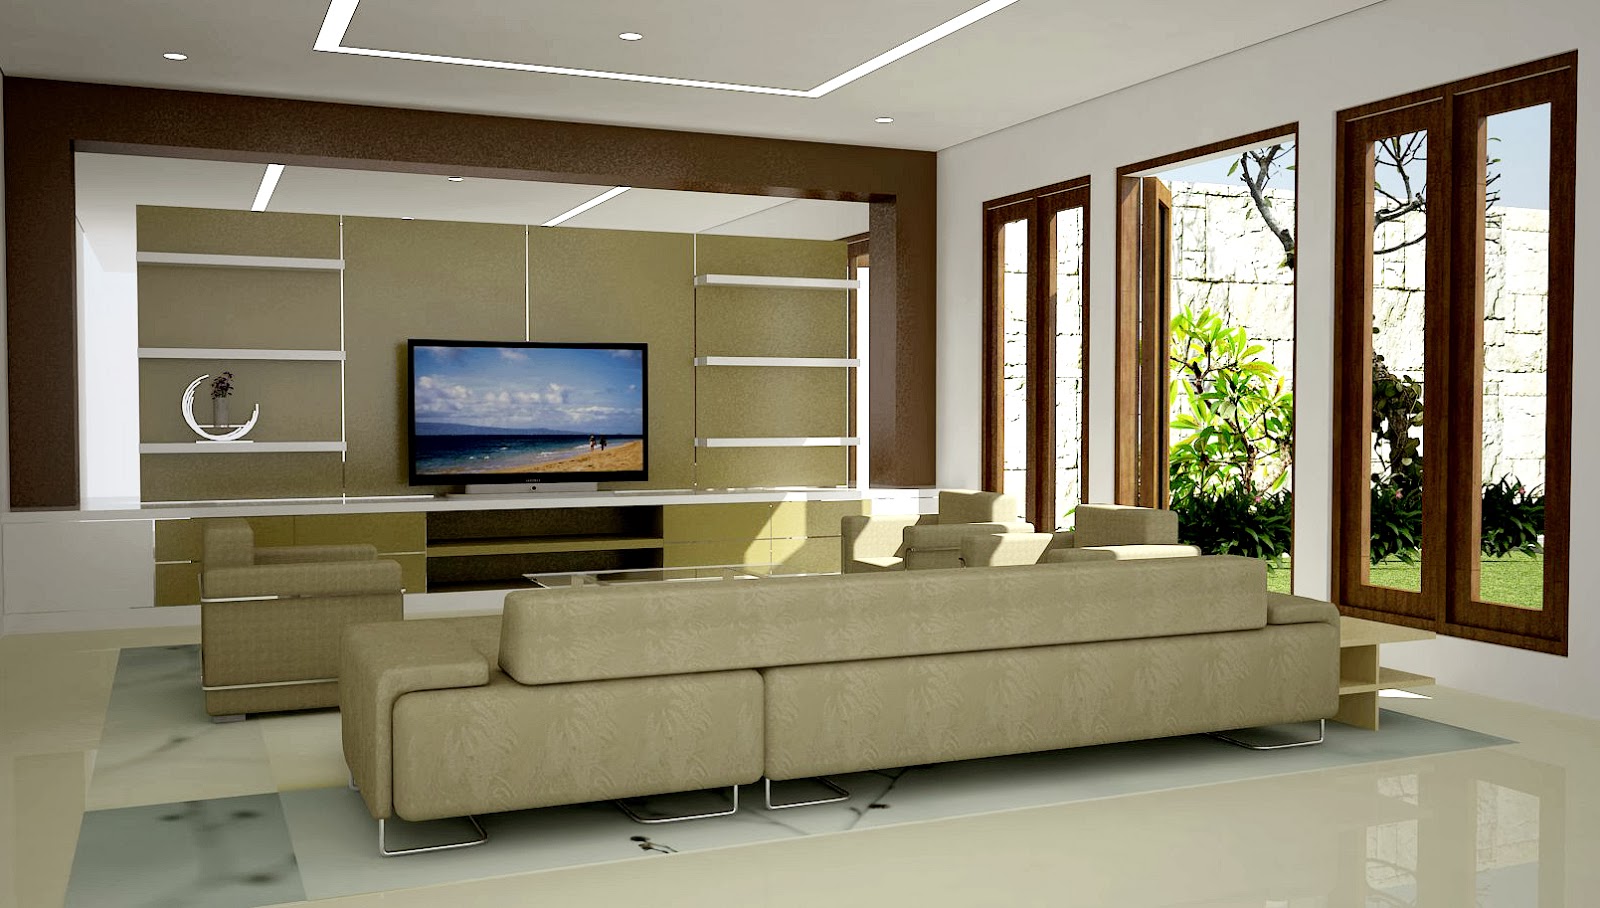 Gambar desain interior ruang keluarga modern